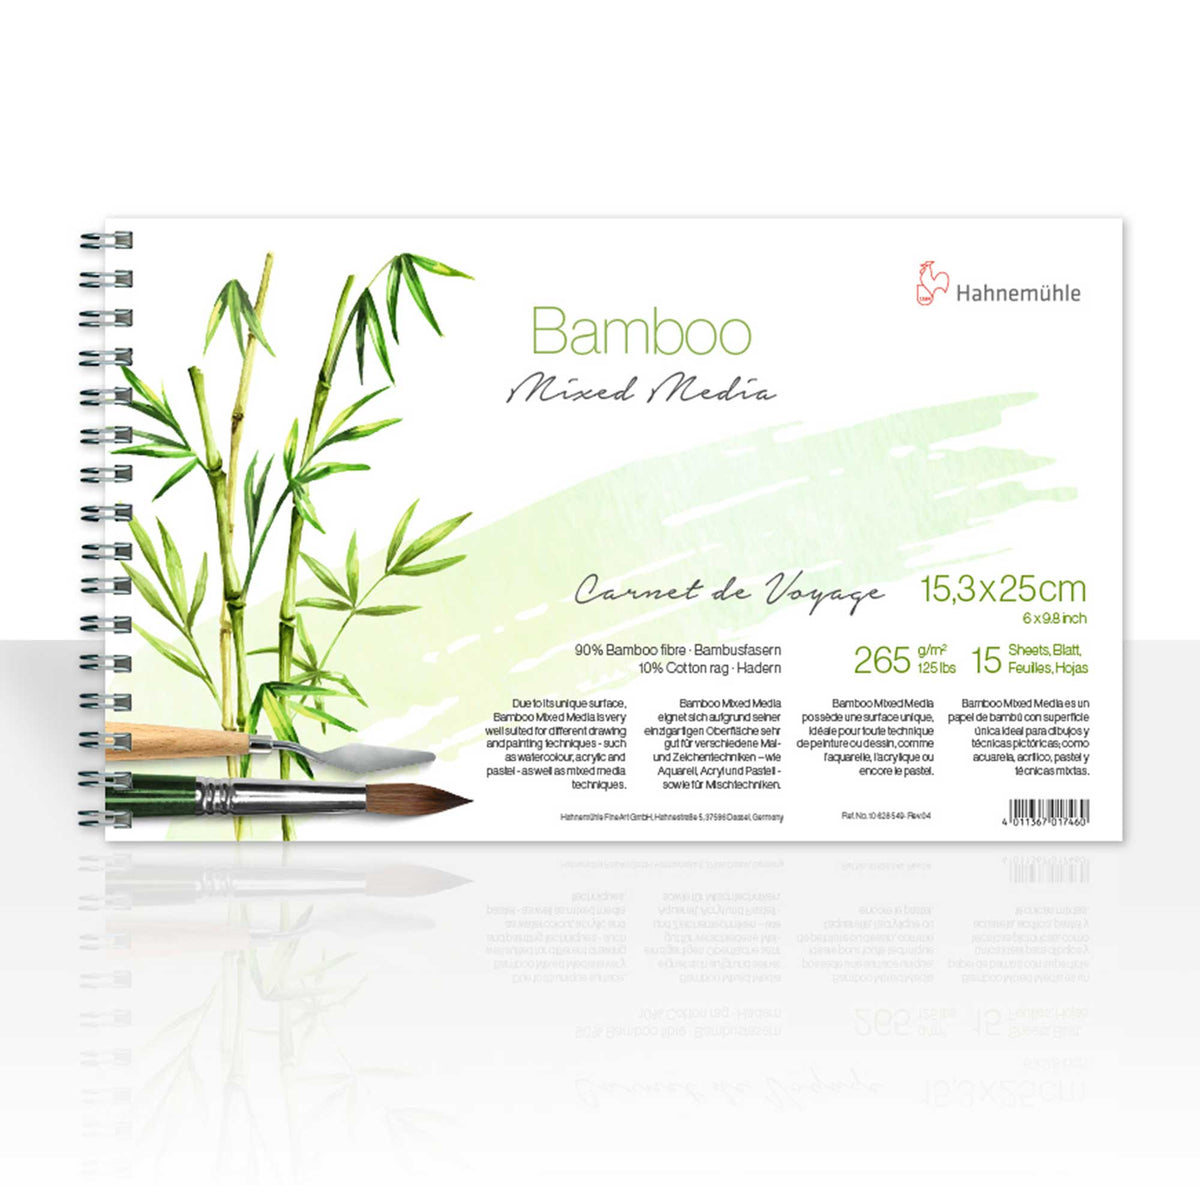 Hahnemühle Bamboo Carnet de Voyage